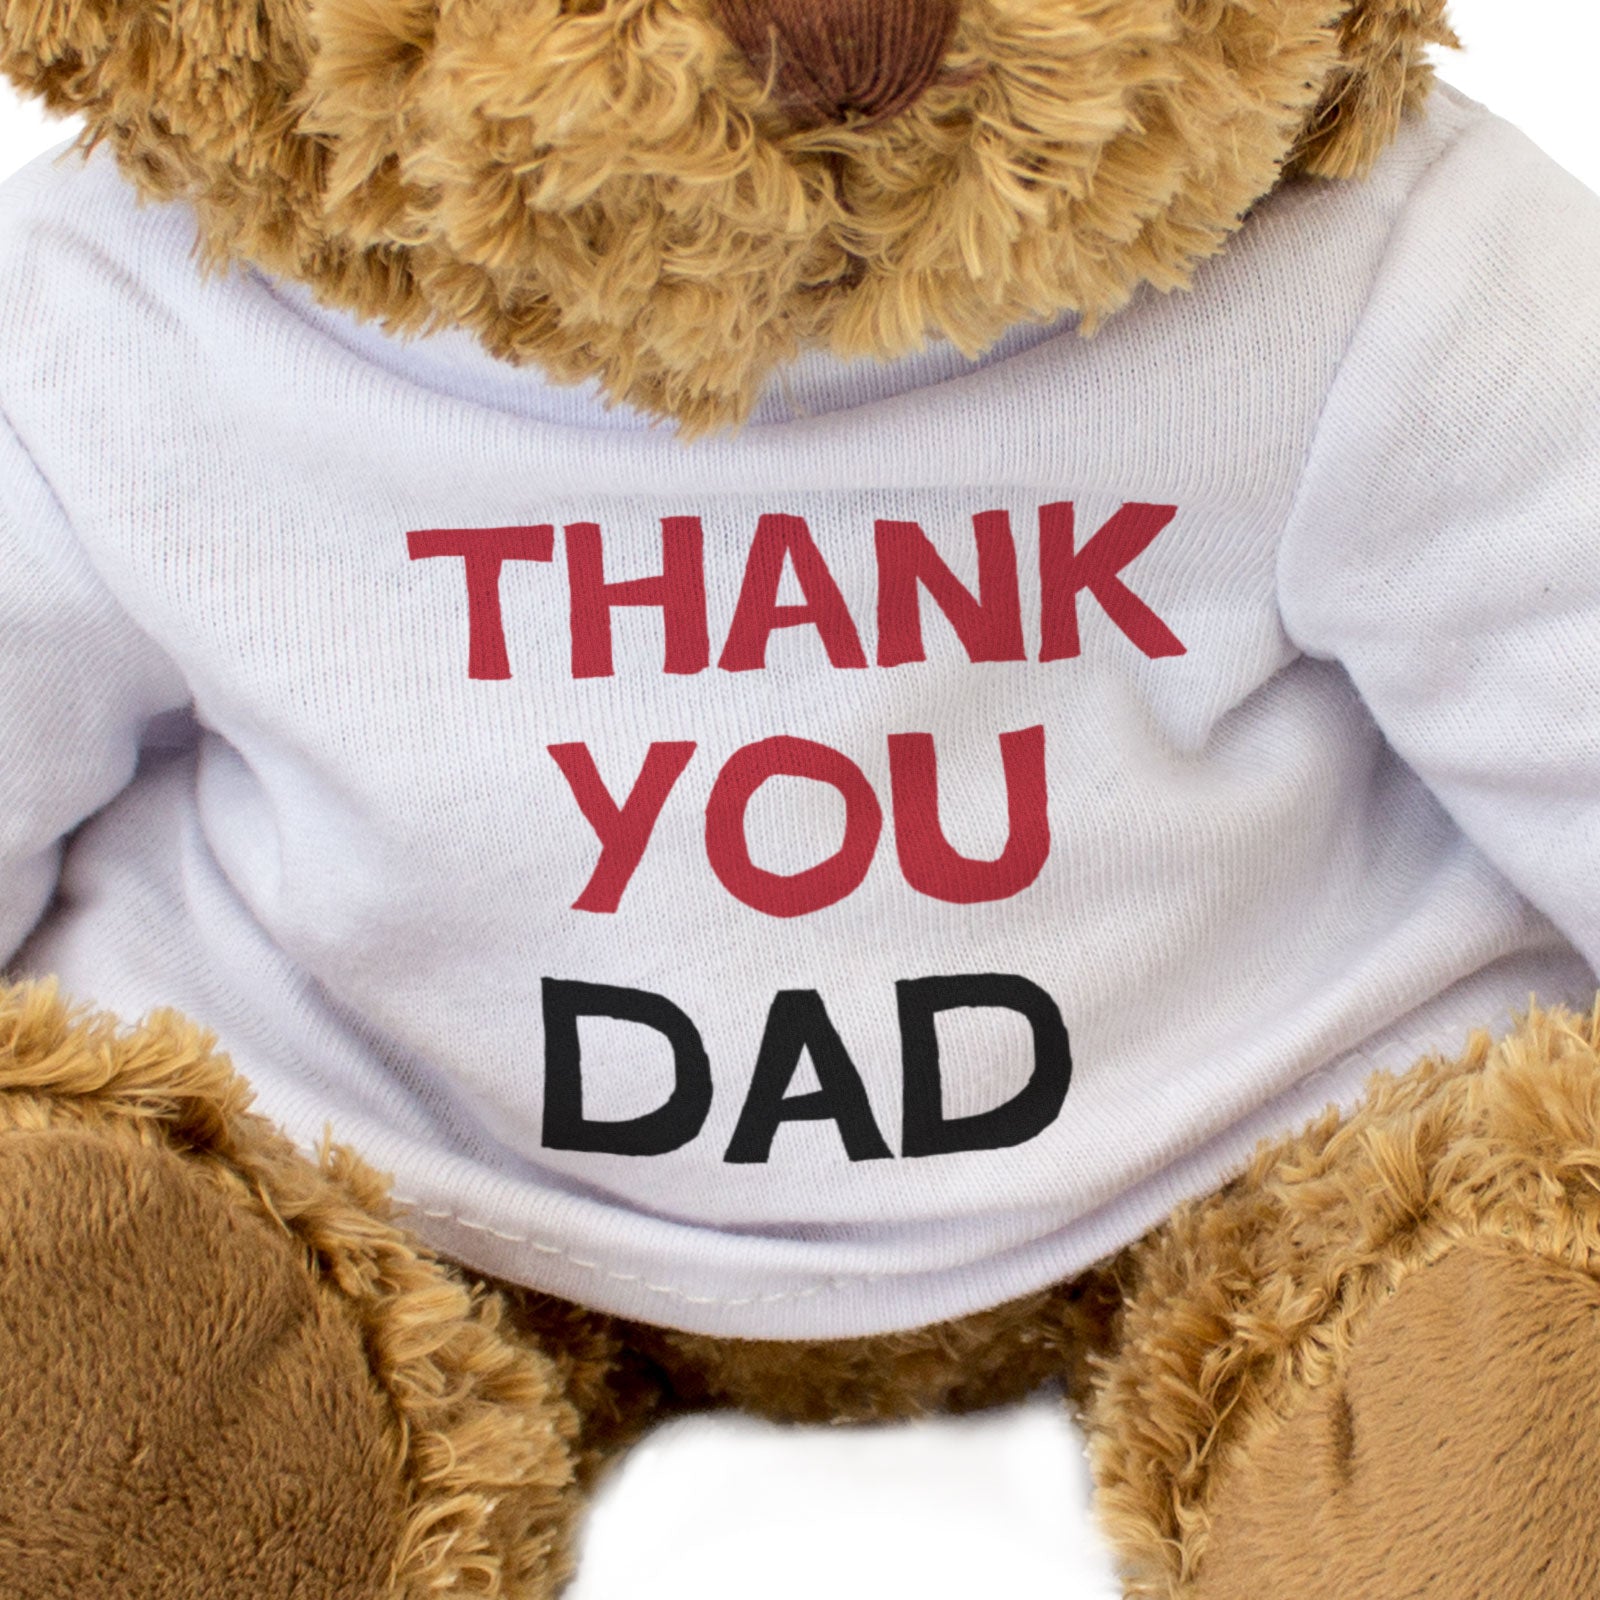 THANK YOU DAD - Teddy Bear